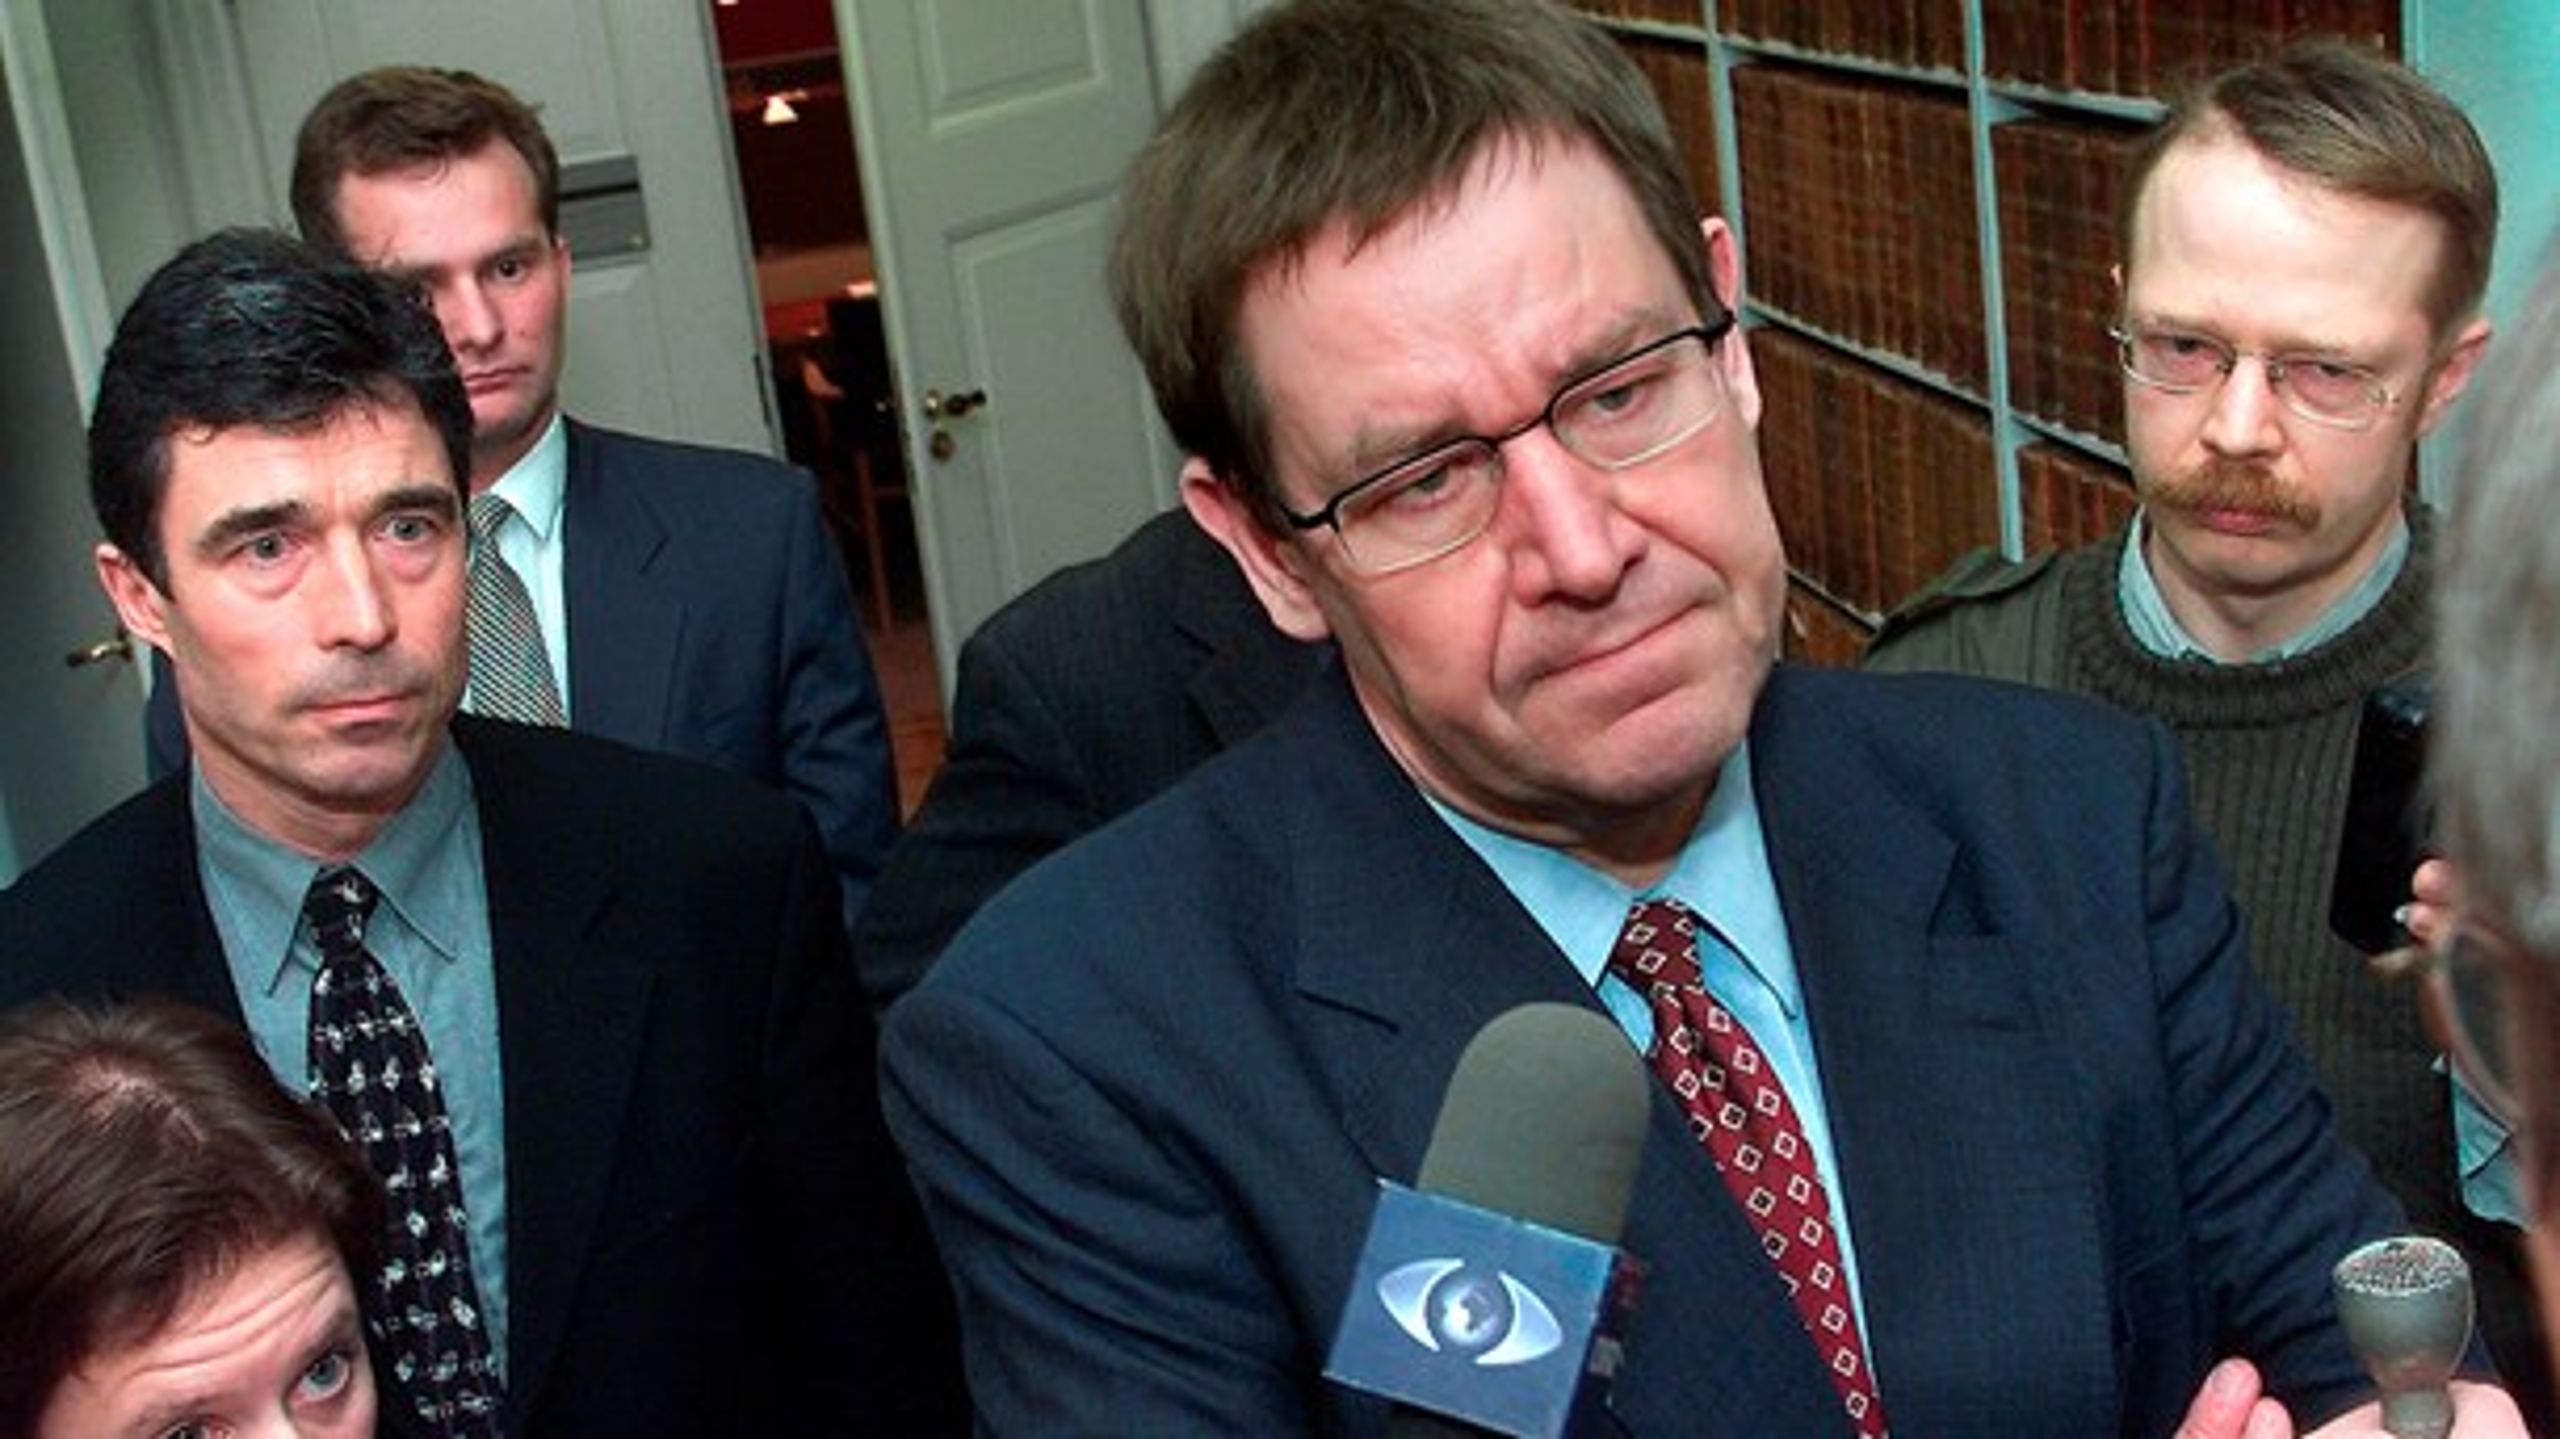 Venstres formand Anders Fogh Rasmussen og statsminister Poul Nyrup Rasmussen efter i mødet i Udenrigspolitisk Nævn, februar 2000, hvor man drøftede EU's holdning til østrigsk regeringsdannelse med eventuel deltagelse af det højrenationale 'Frihedspartiet'.